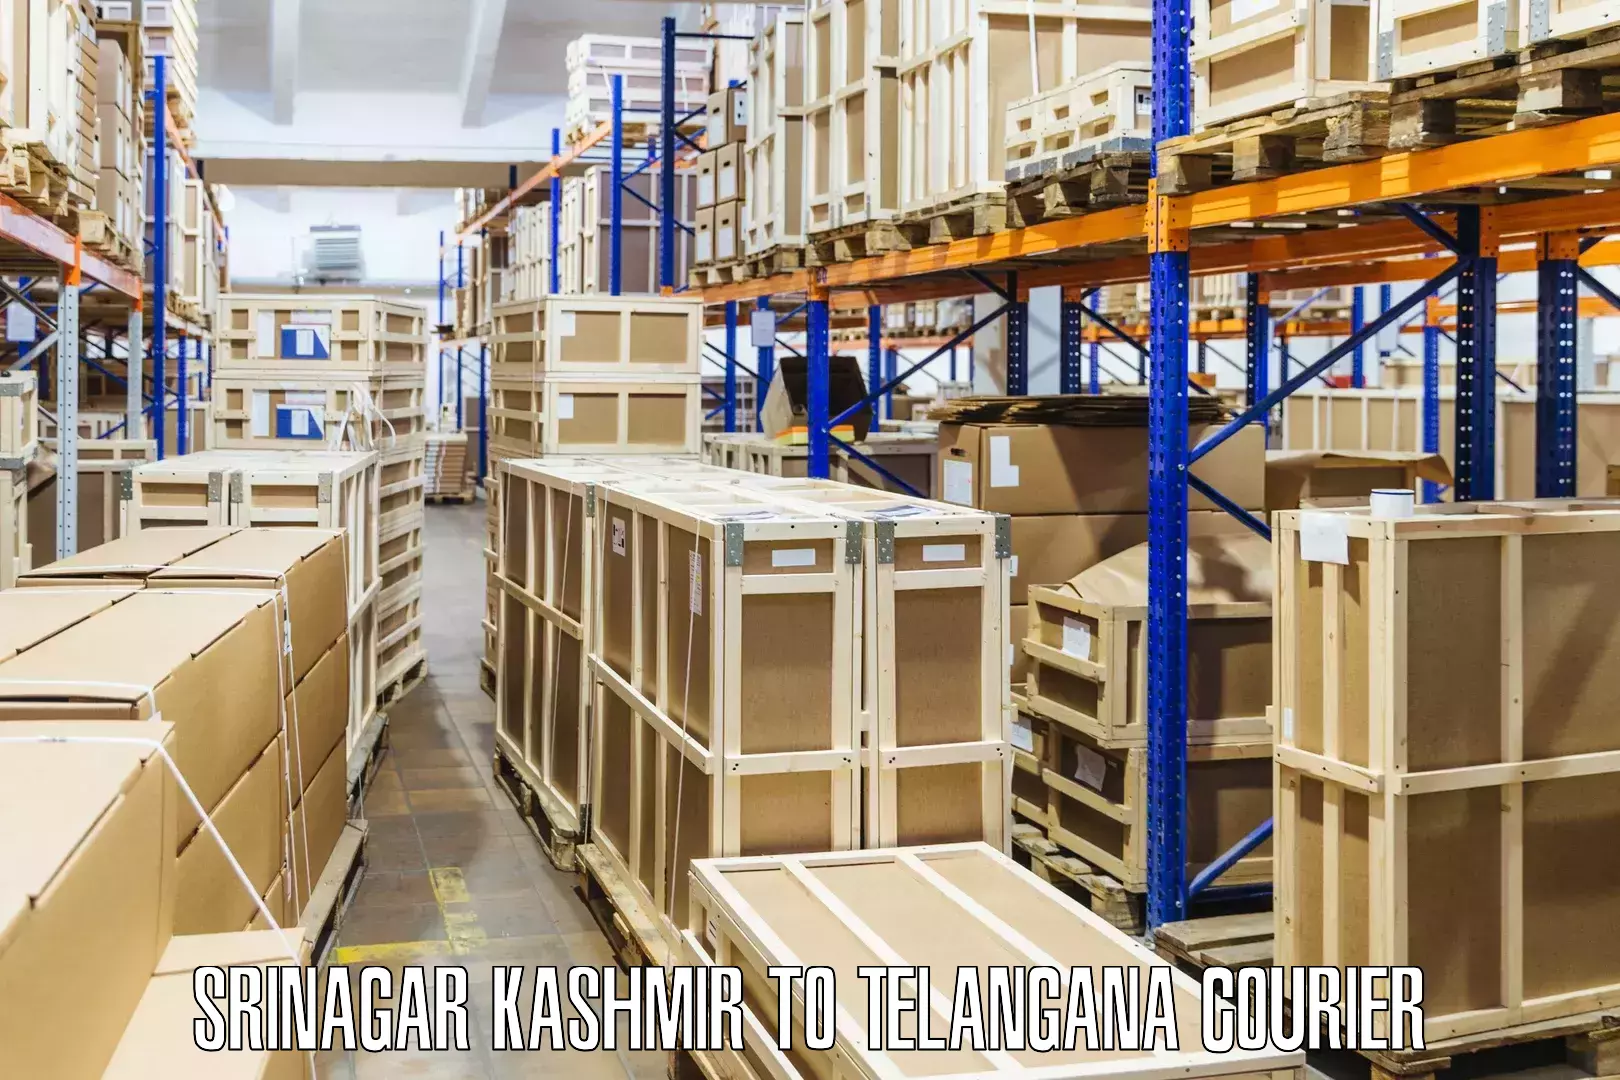 Global parcel delivery Srinagar Kashmir to Shadnagar